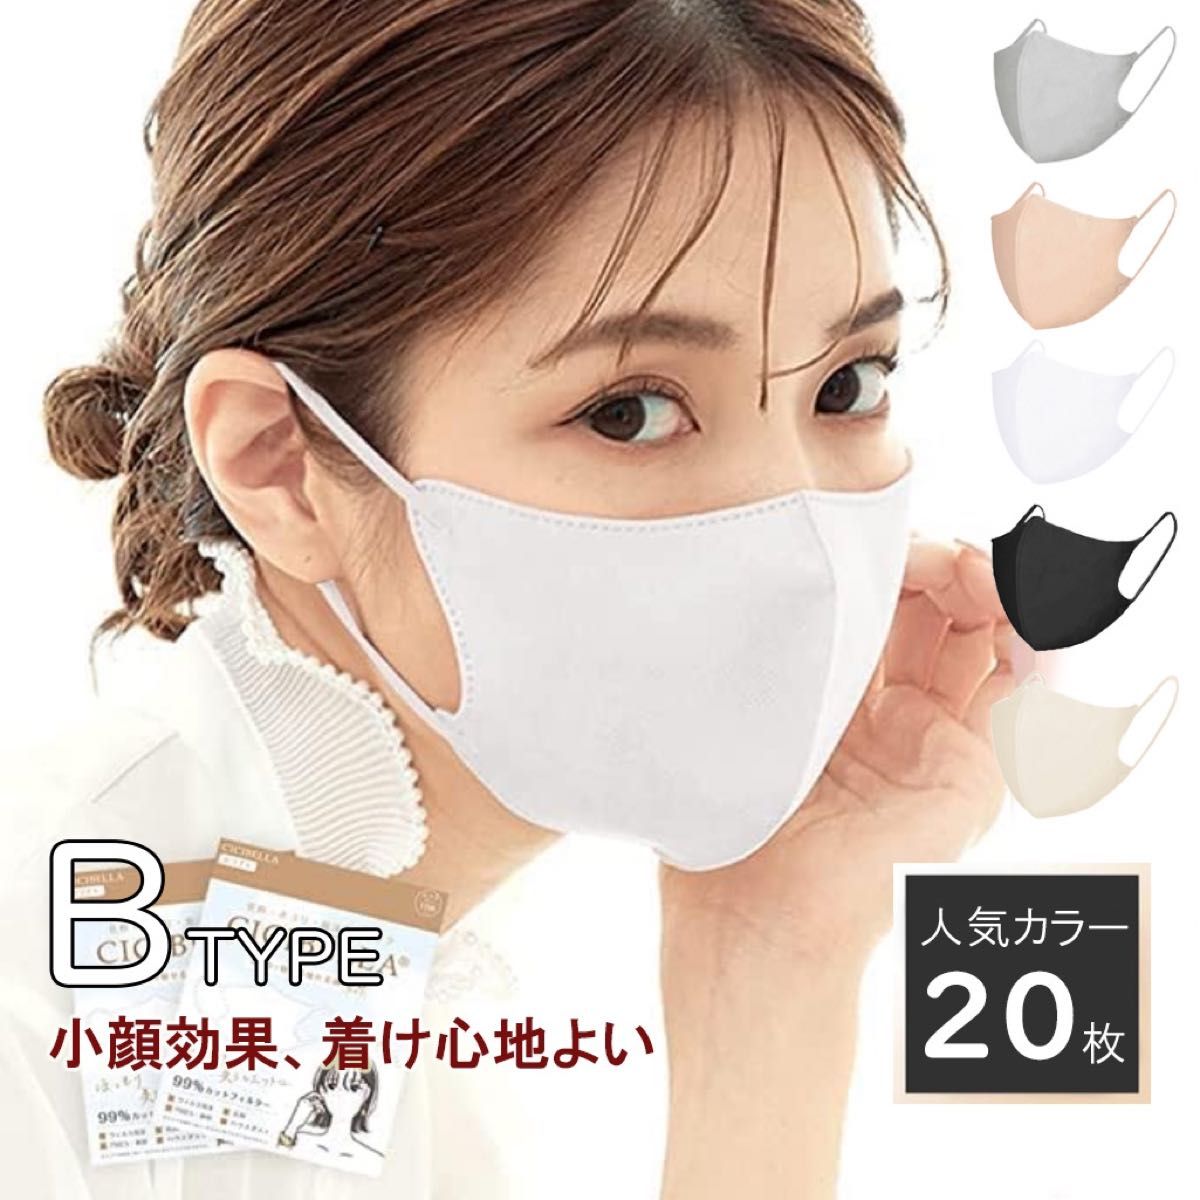 面長さん Bタイプ マスク ホワイト 白 20枚 シシベラ 不織布 3D 花粉症対策 立体 mask 肌に優しい 小顔 チャック袋